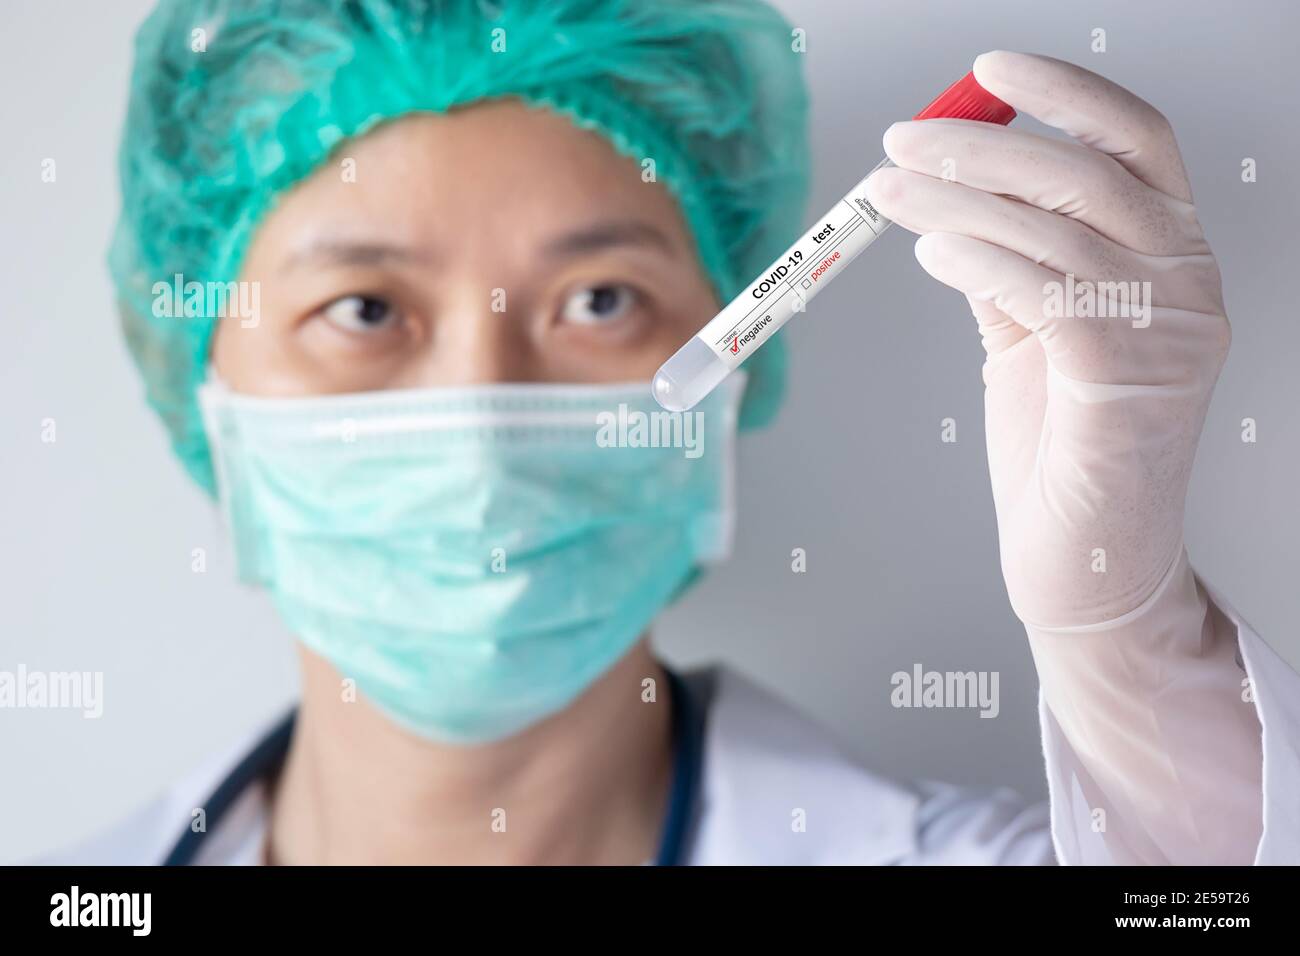 Test COVID-19 du coronavirus. Main du médecin avec un gant tenant une sonde d'essai avec un échantillon de sécrétion nasale du patient pour une infection négative du virus corona Banque D'Images